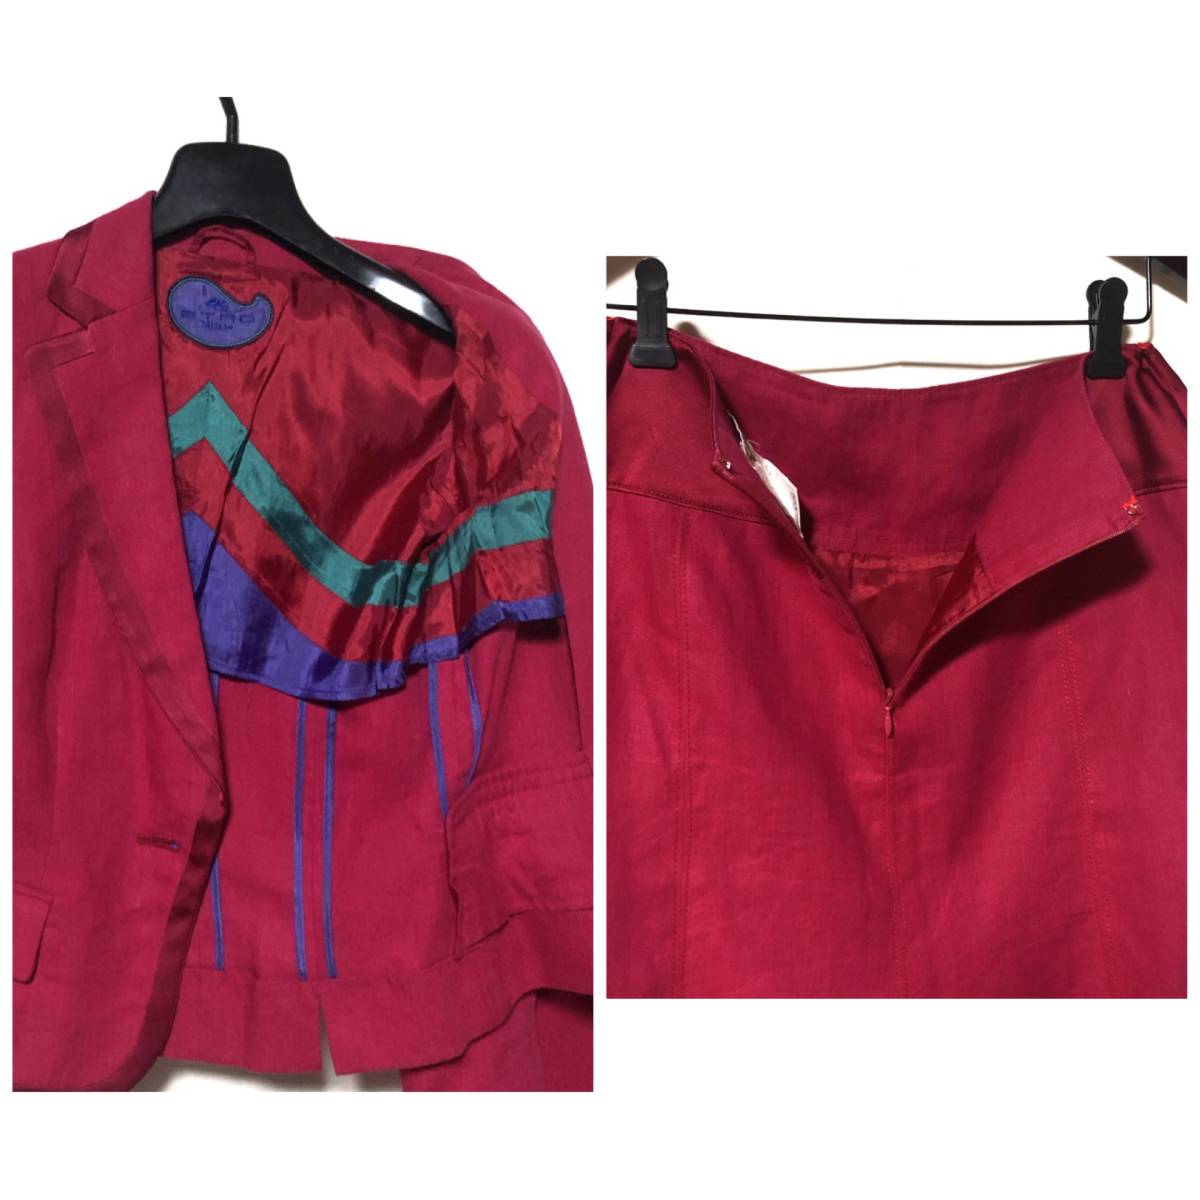 ETRO лен жакет & юбка выставить костюм / Etro linen100% rose розовый размер сверху 40 внизу 38